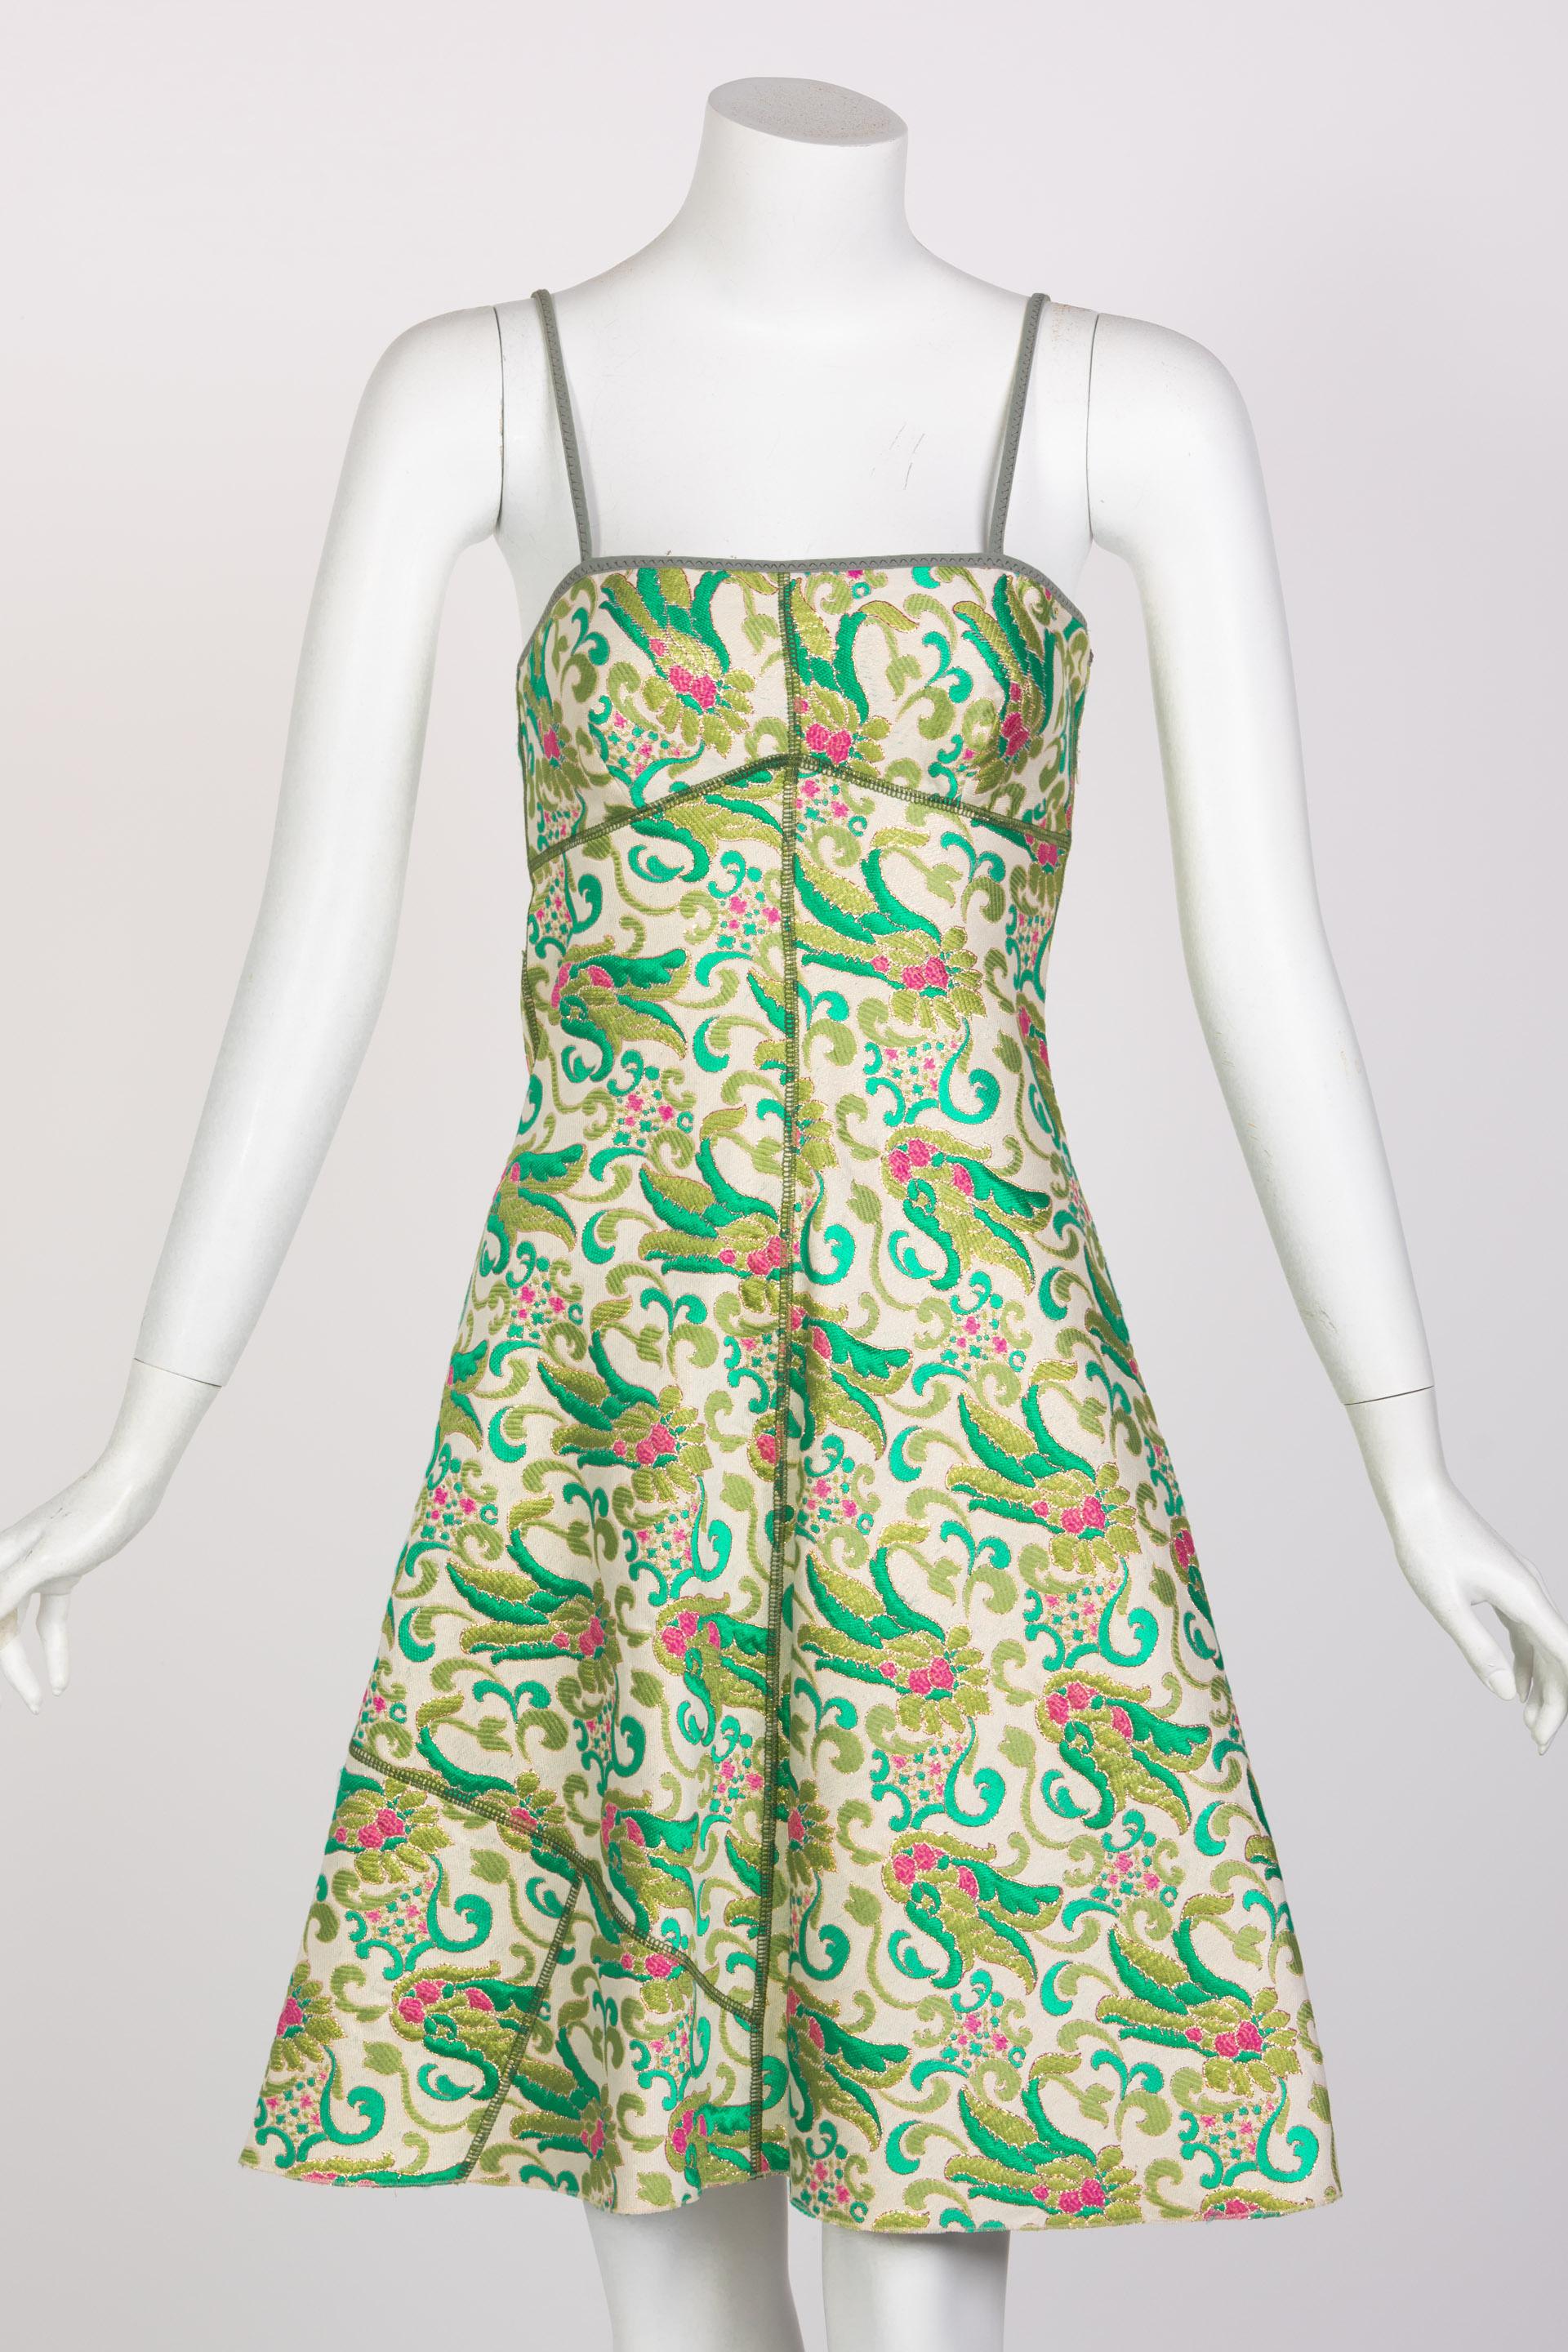 Le printemps était dans l'air sur le défilé S/S 2003 de Prada. Avec des verts frais et des tons de terre chics, Prada a une fois de plus capturé un look léger et moderne avec une touche d'inspiration chinoise. Cette robe en brocart de coton mélangé